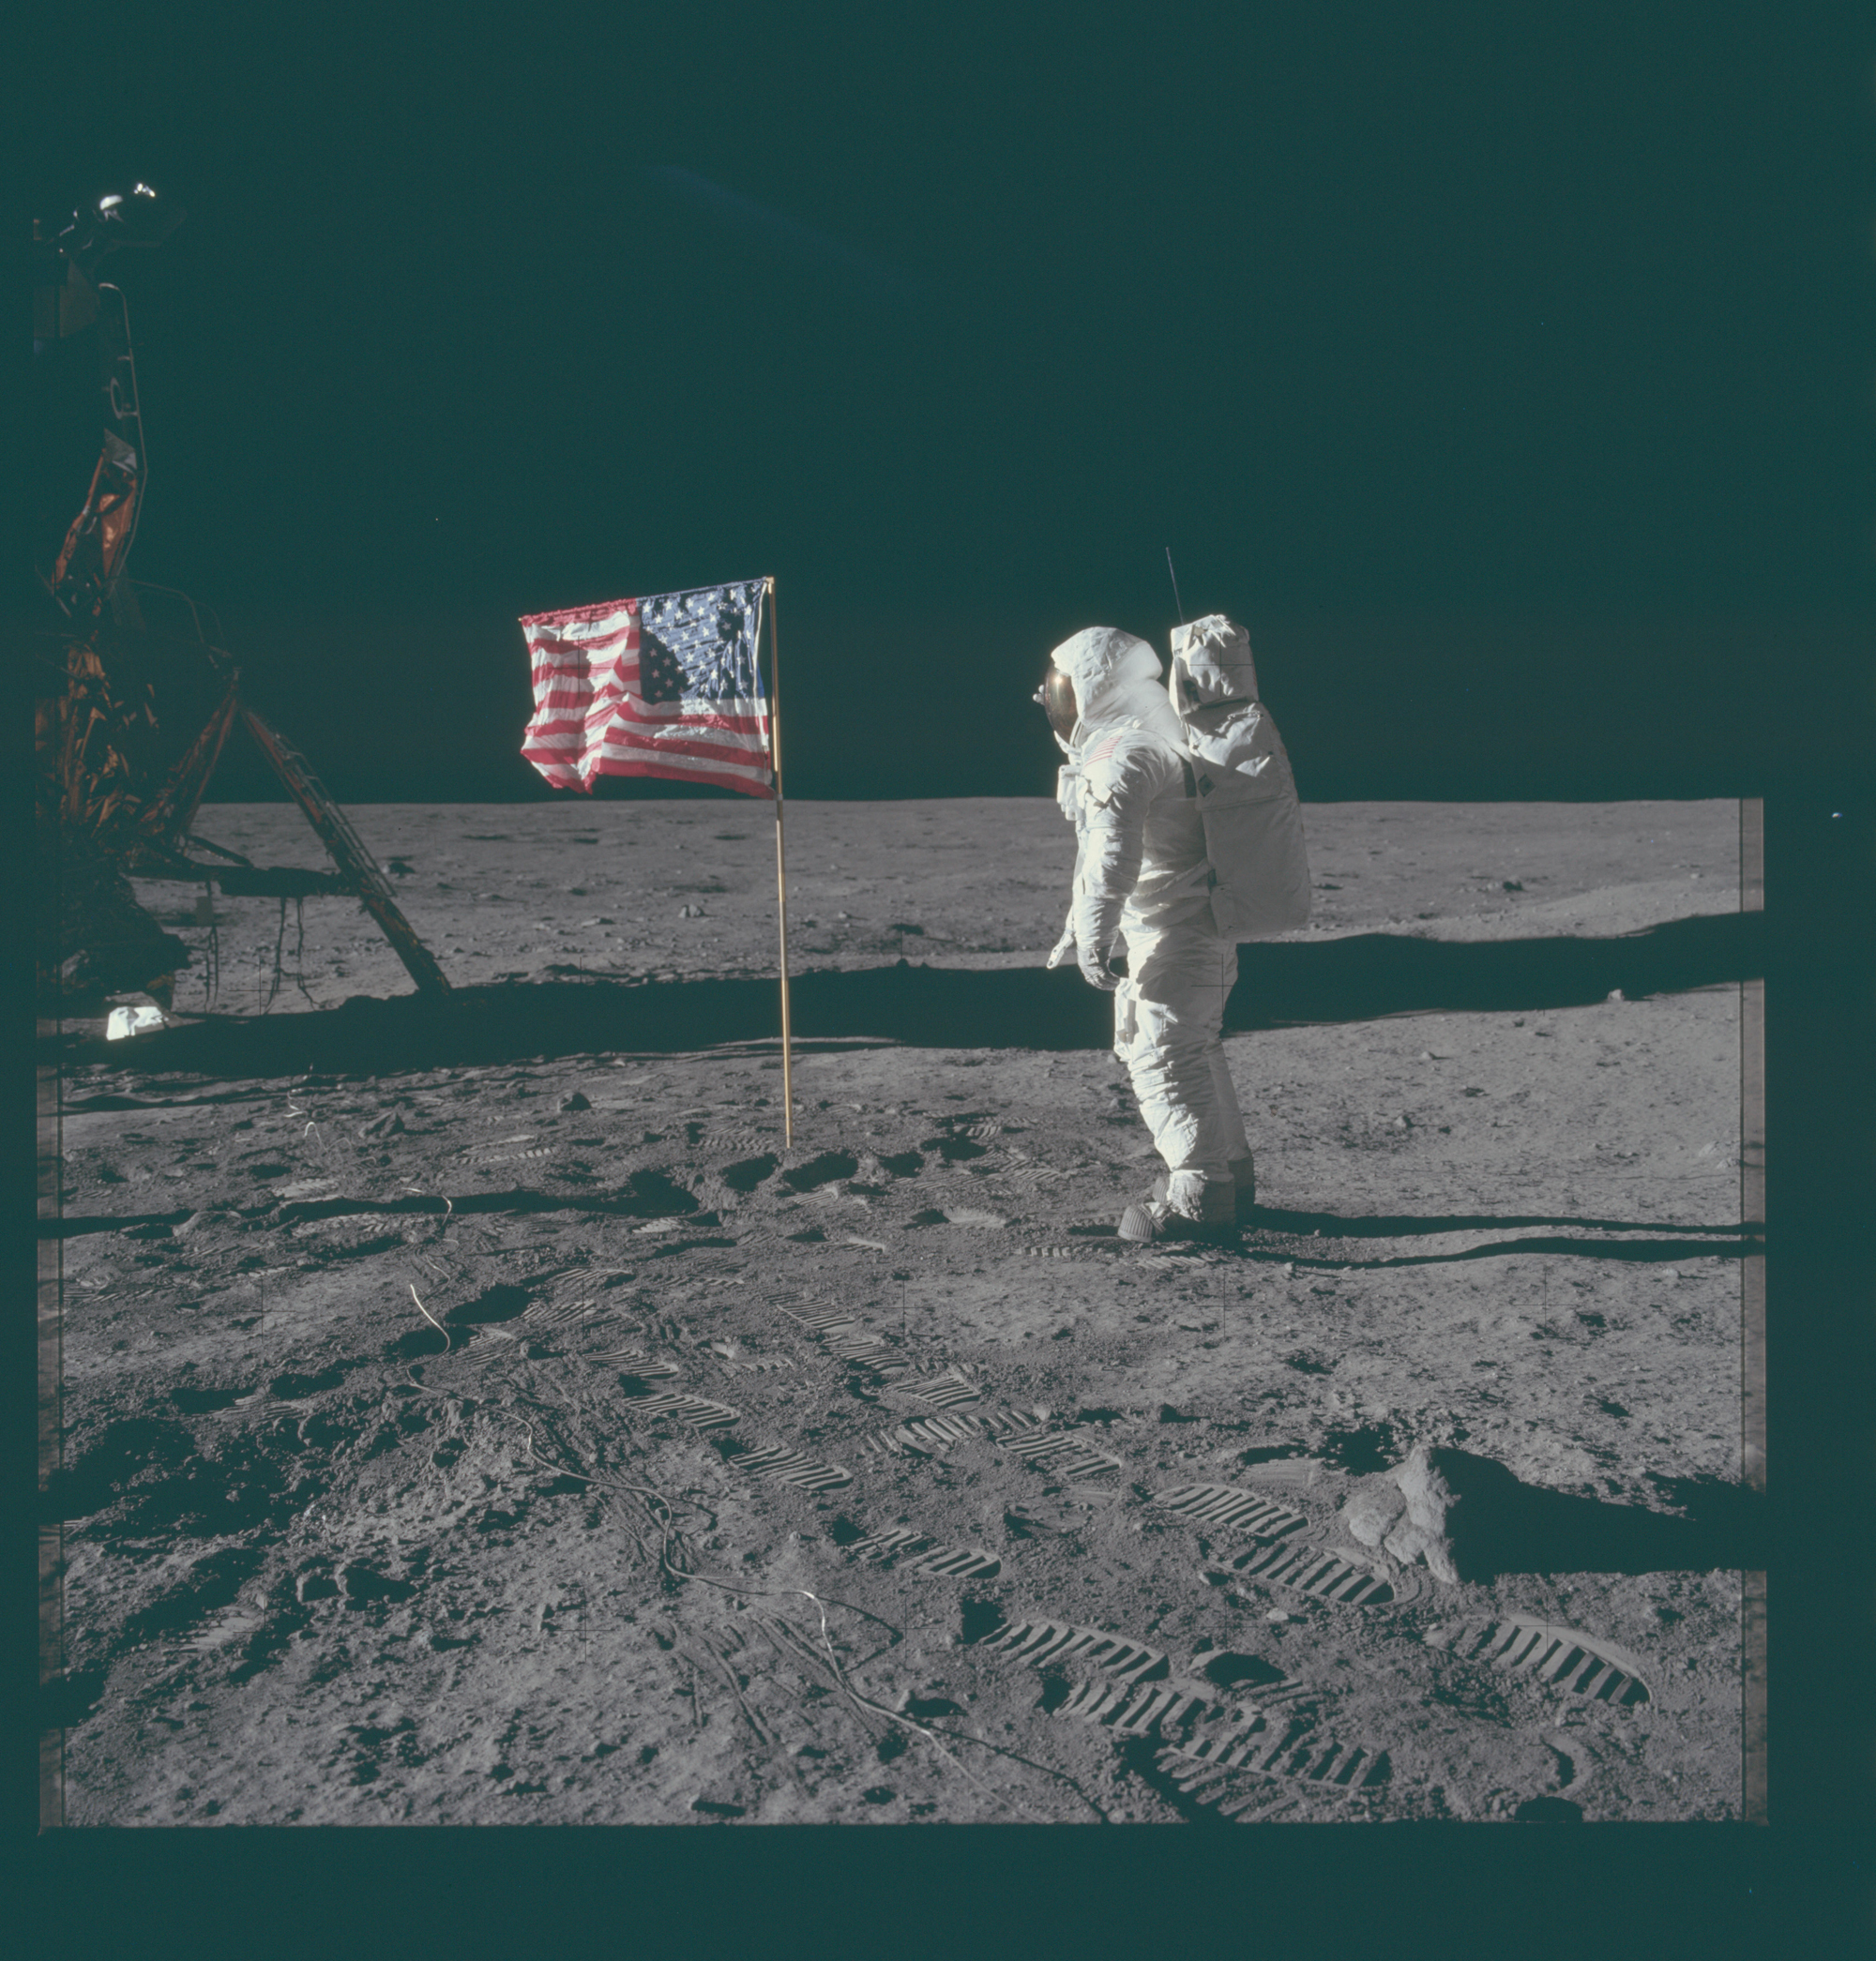 Bild eines Astronauten auf dem Mond mit Fußspuren im Staub und amerikanischer Flagge 